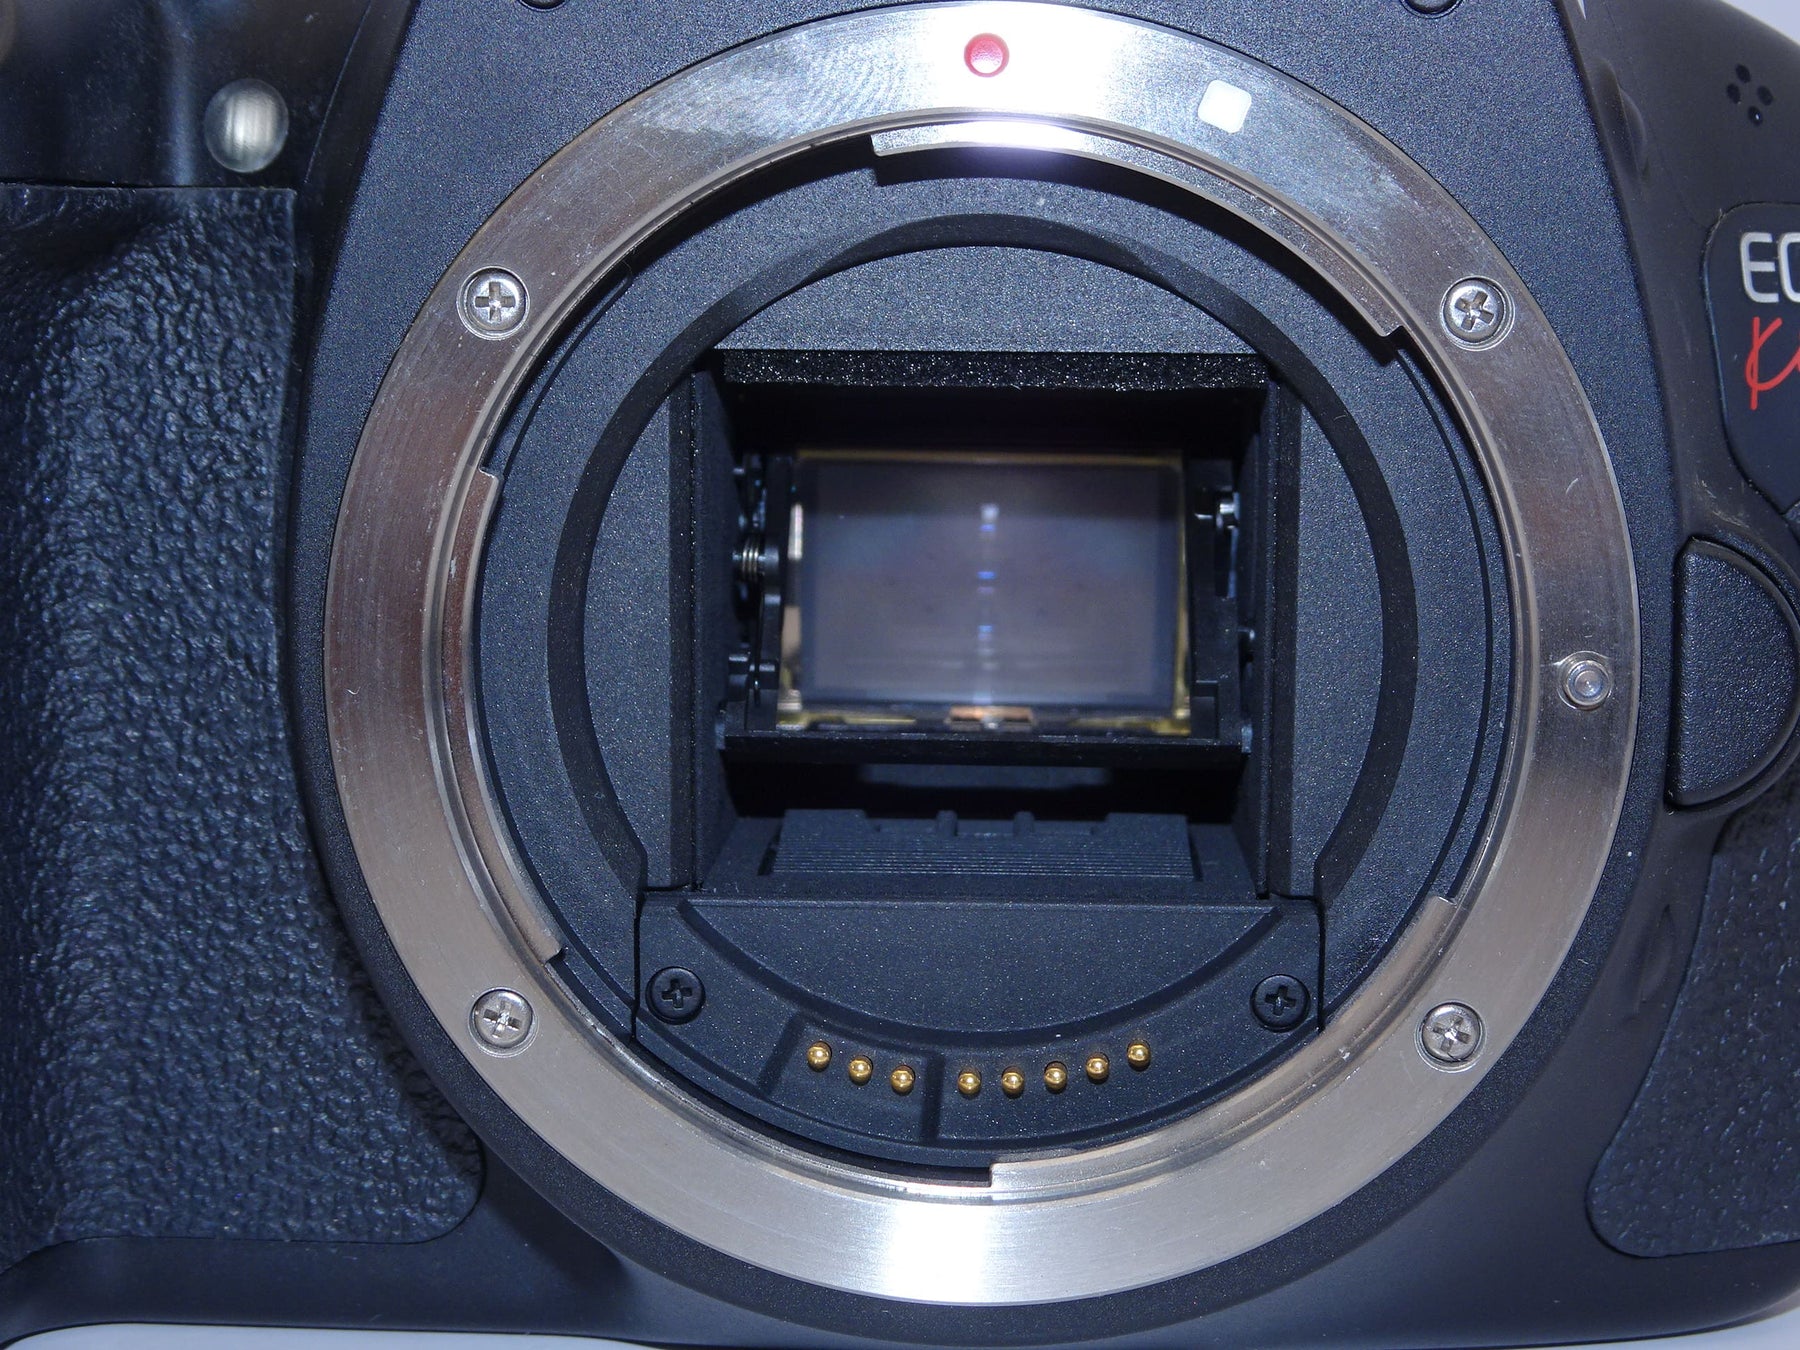 【外観並級】Canon デジタル一眼レフカメラ EOS Kiss X5 ボディ KISSX5-BODY